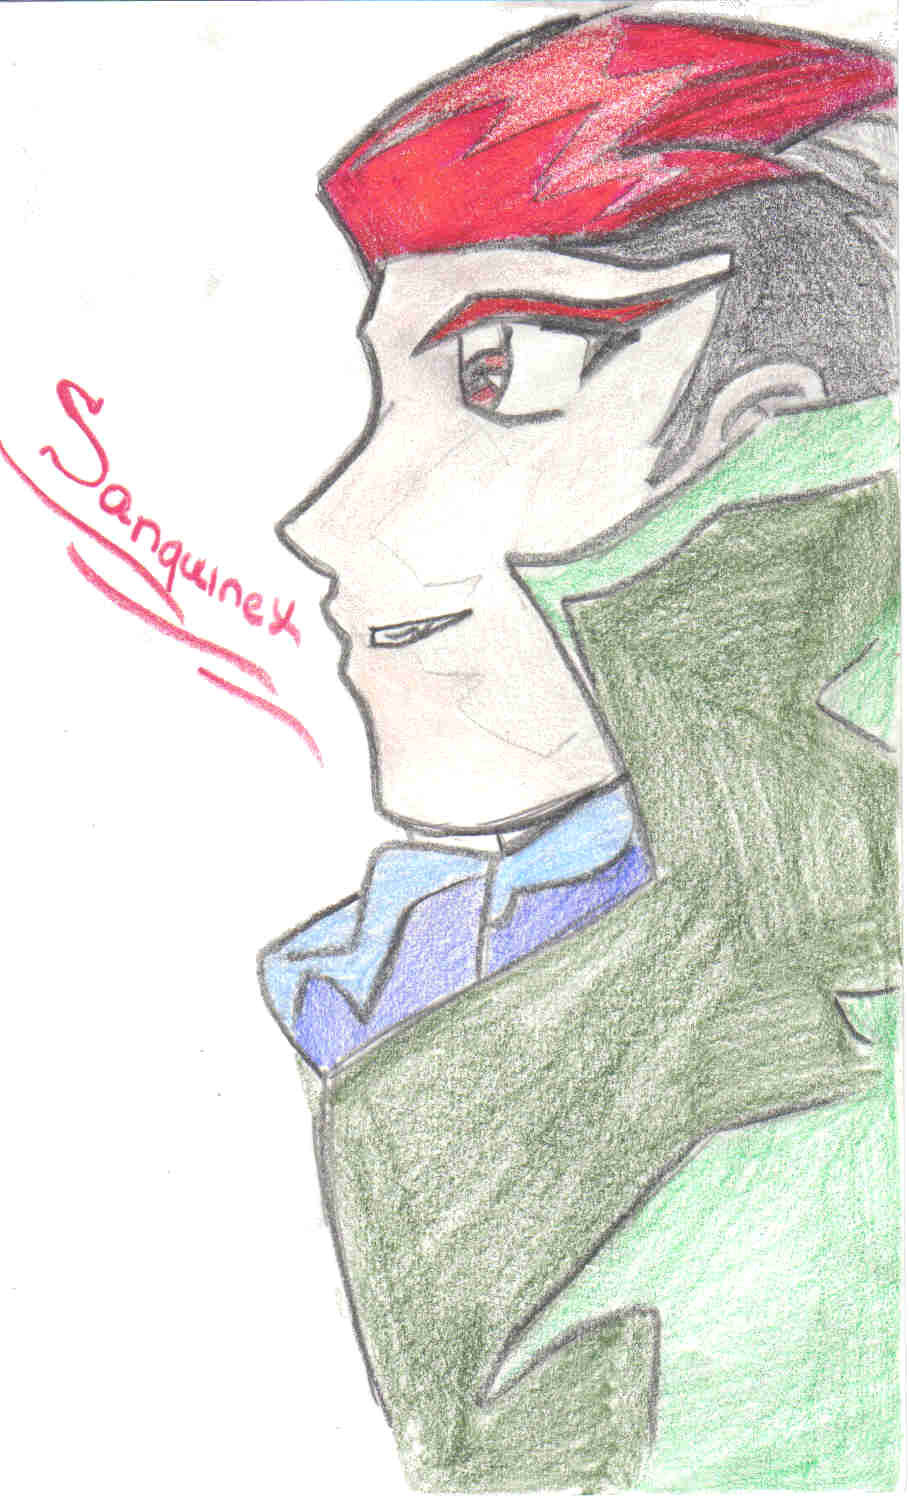 Sanquinex by Vampire_Maiden